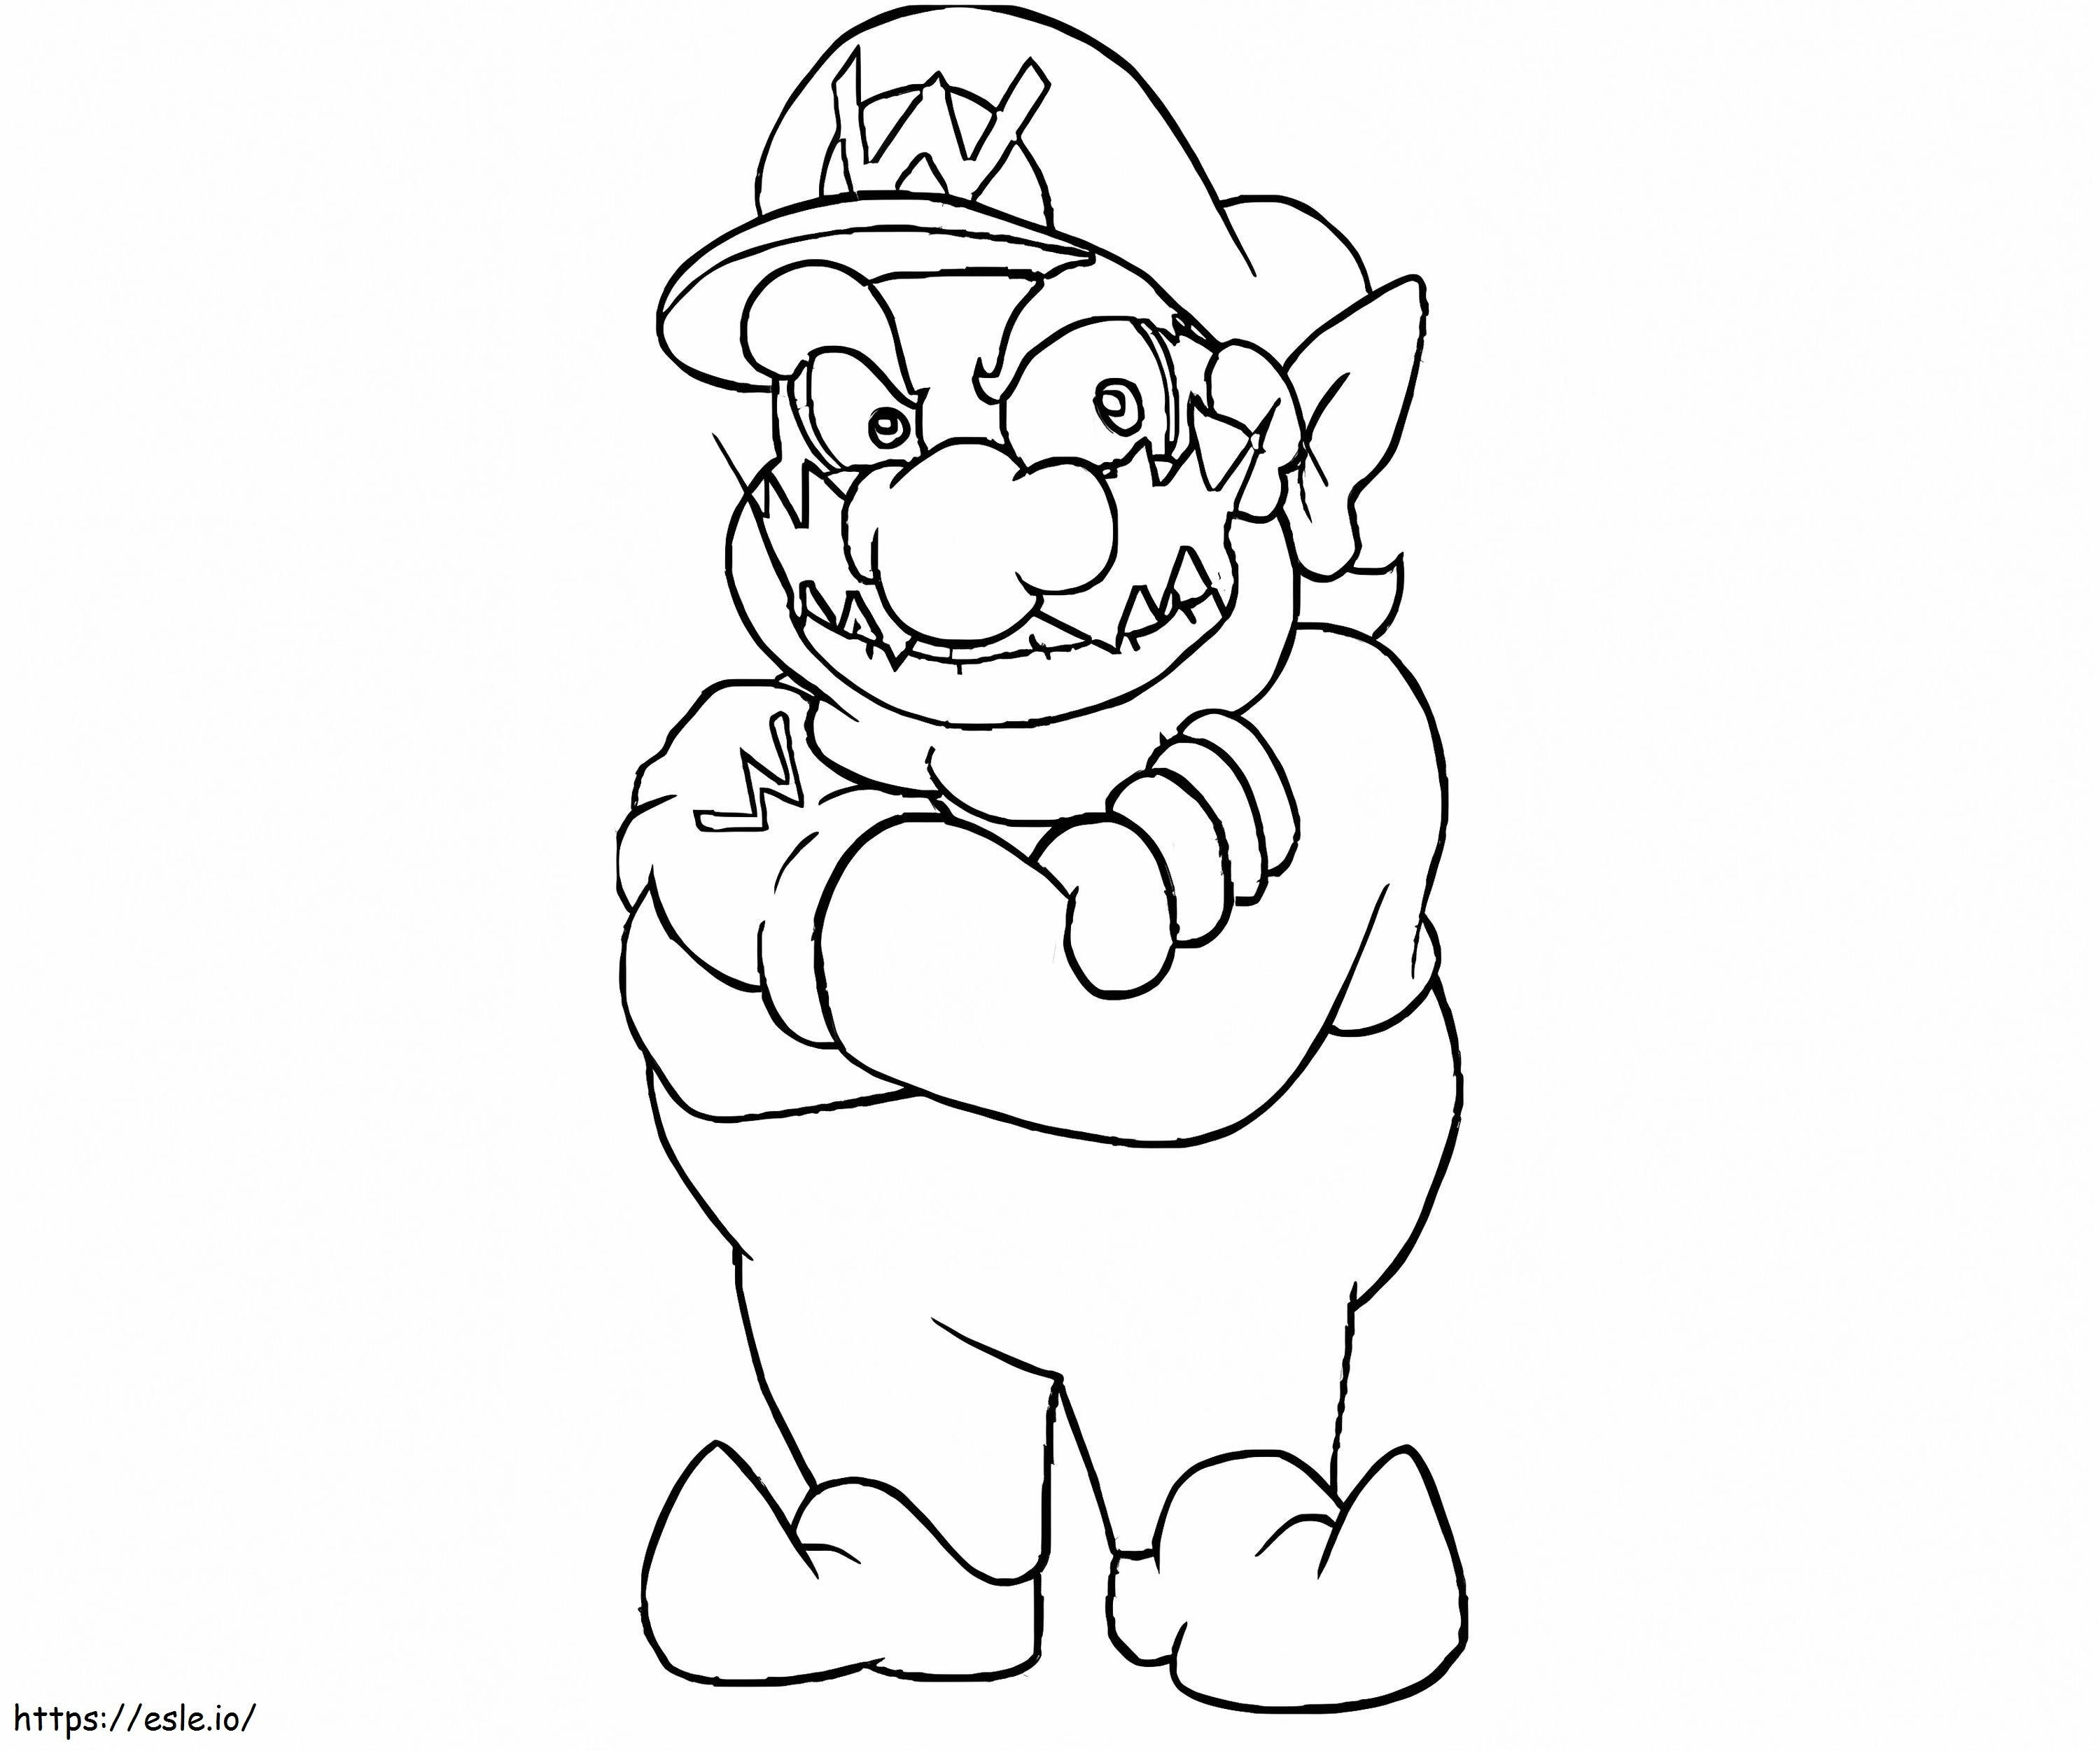 Wario aus Super Mario 4 ausmalbilder